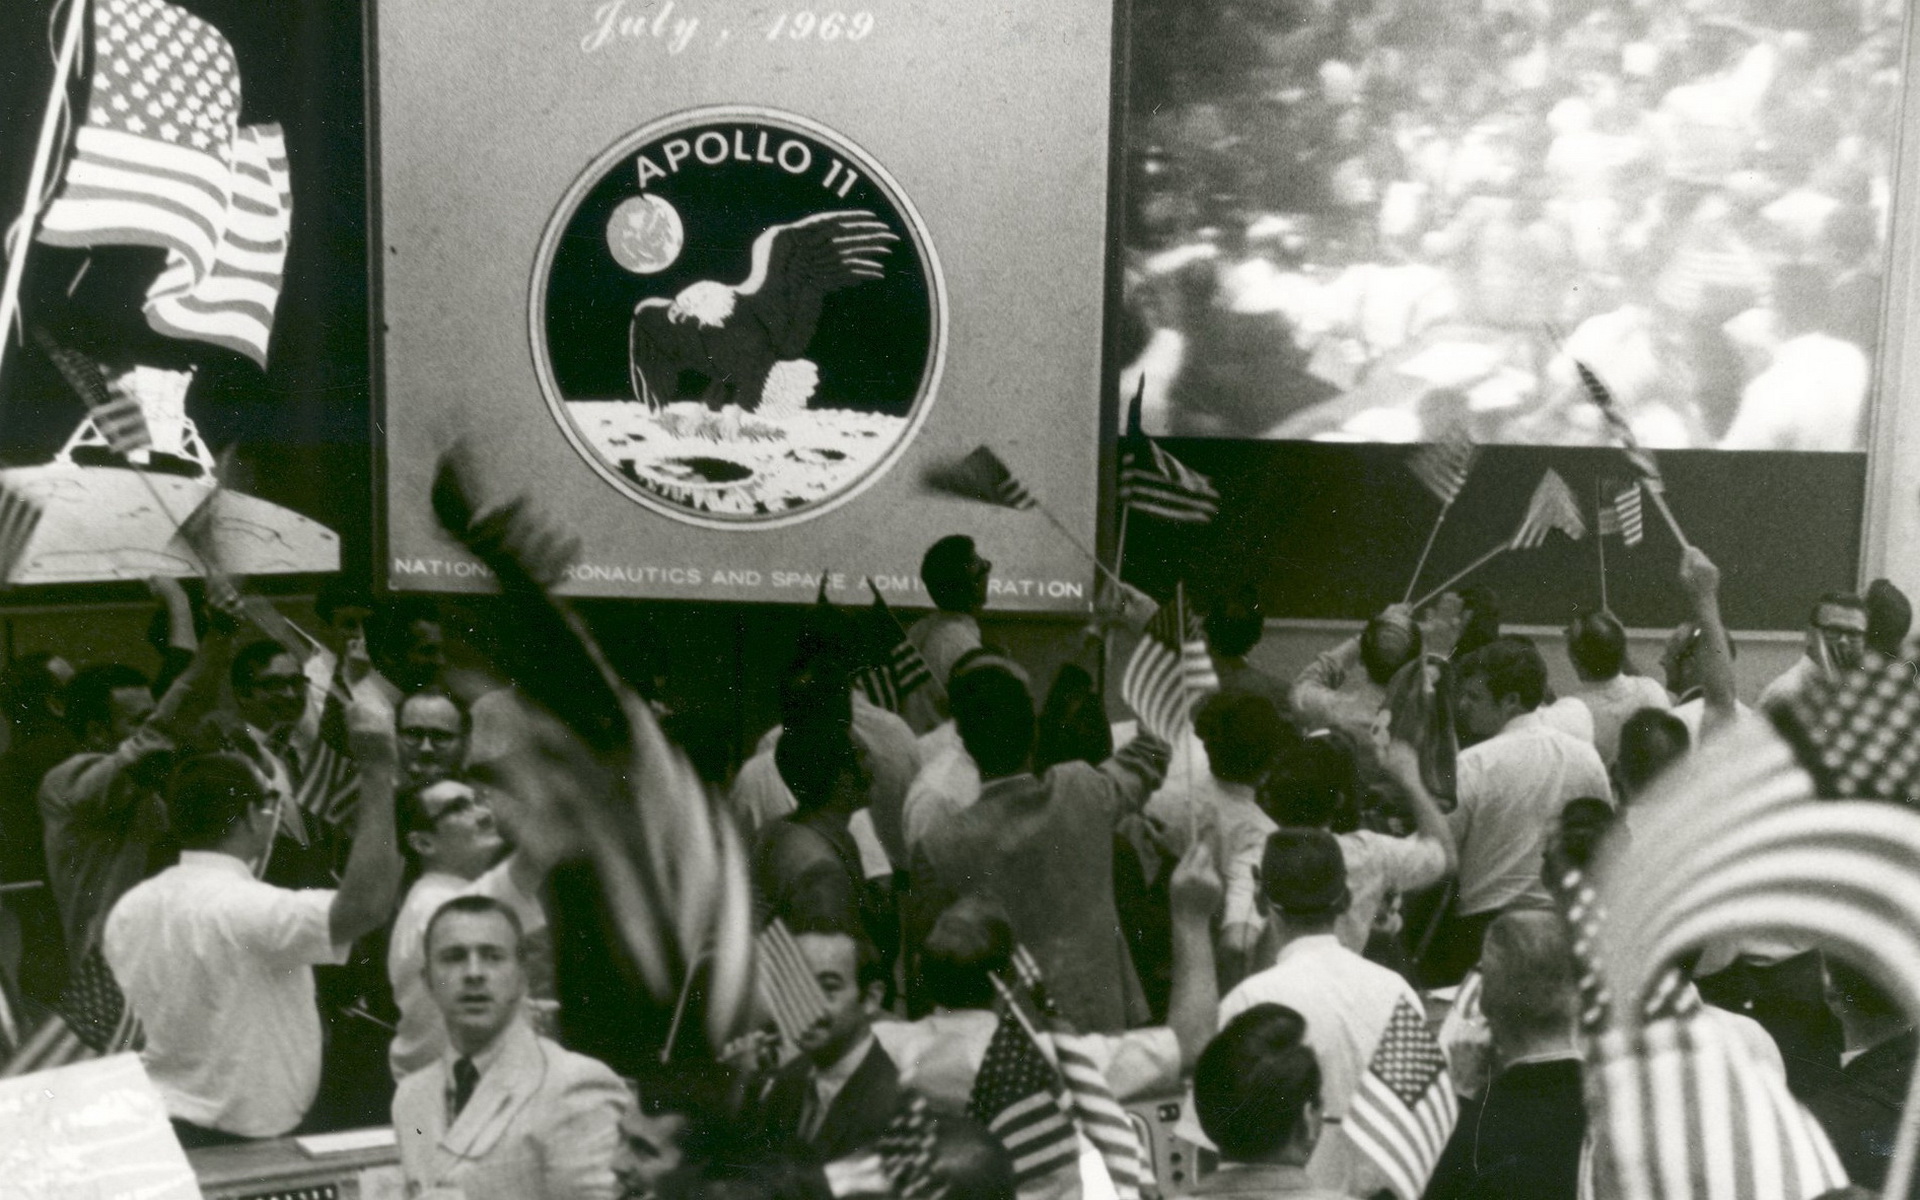 壁纸1920x1200阿波罗11珍贵照片壁纸壁纸 阿波罗11珍贵照片壁纸壁纸 阿波罗11珍贵照片壁纸图片 阿波罗11珍贵照片壁纸素材 其他壁纸 其他图库 其他图片素材桌面壁纸